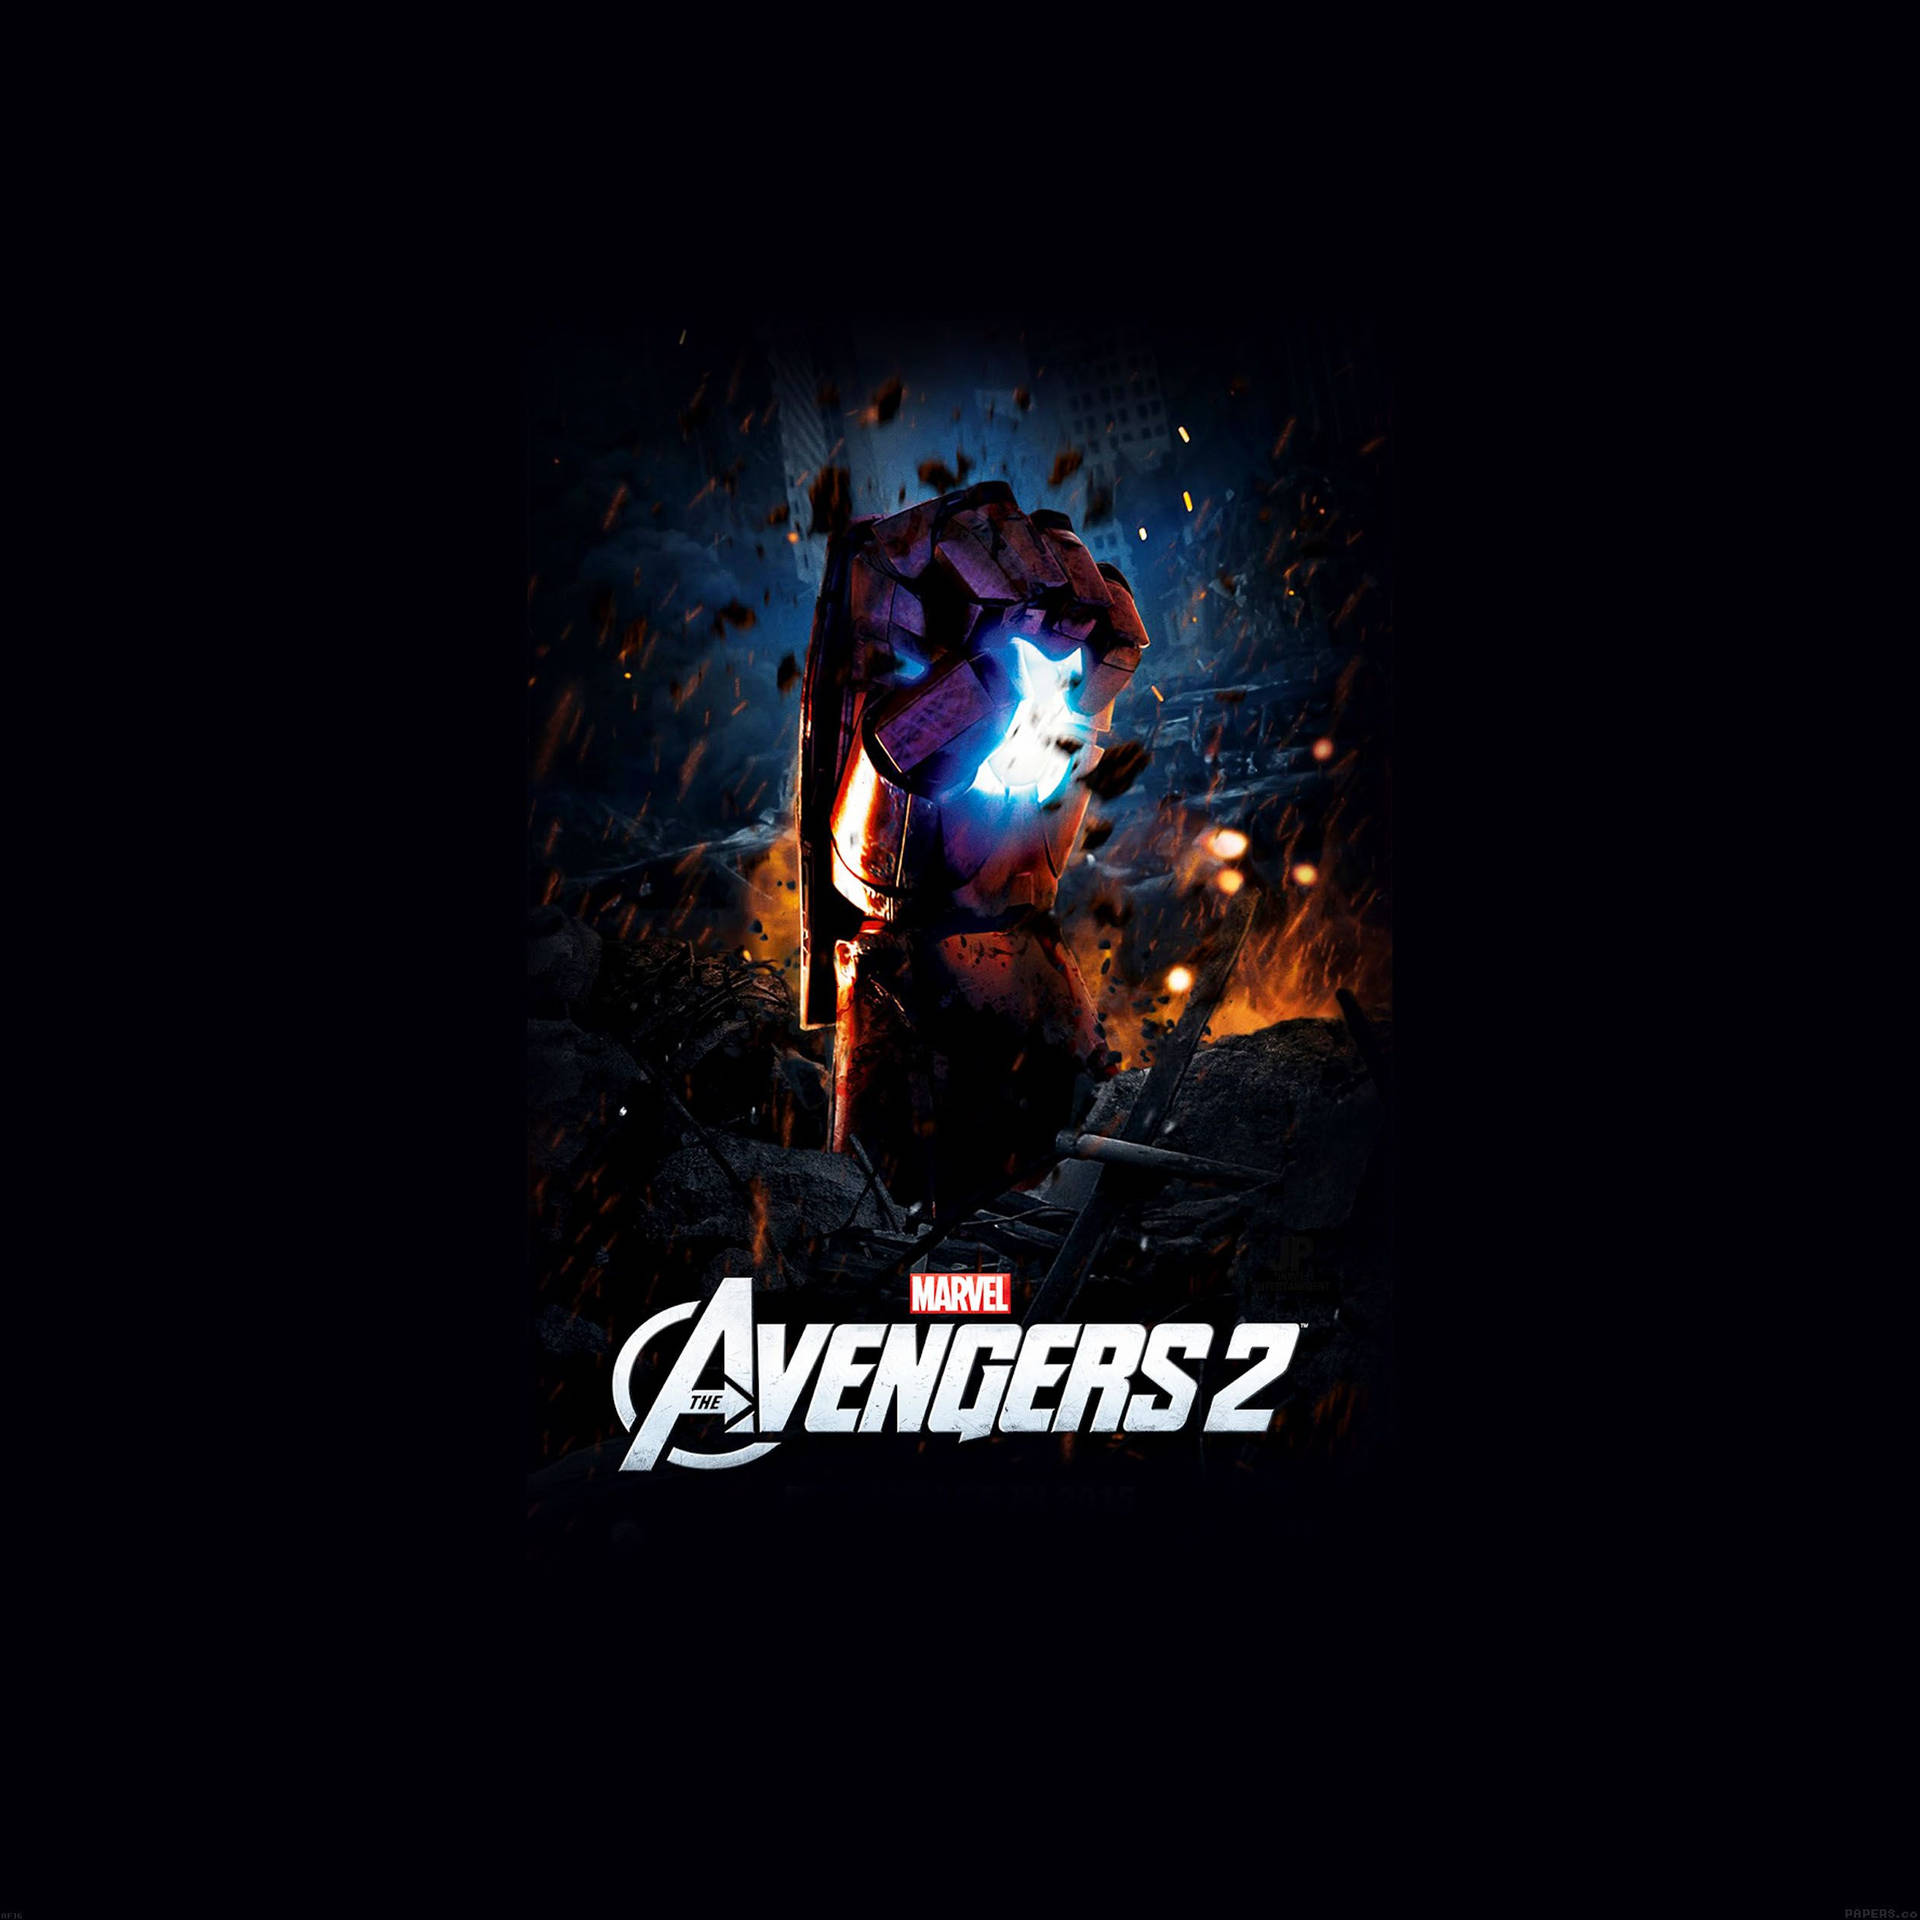 Marvel's Avengers Assemble Wallpaper